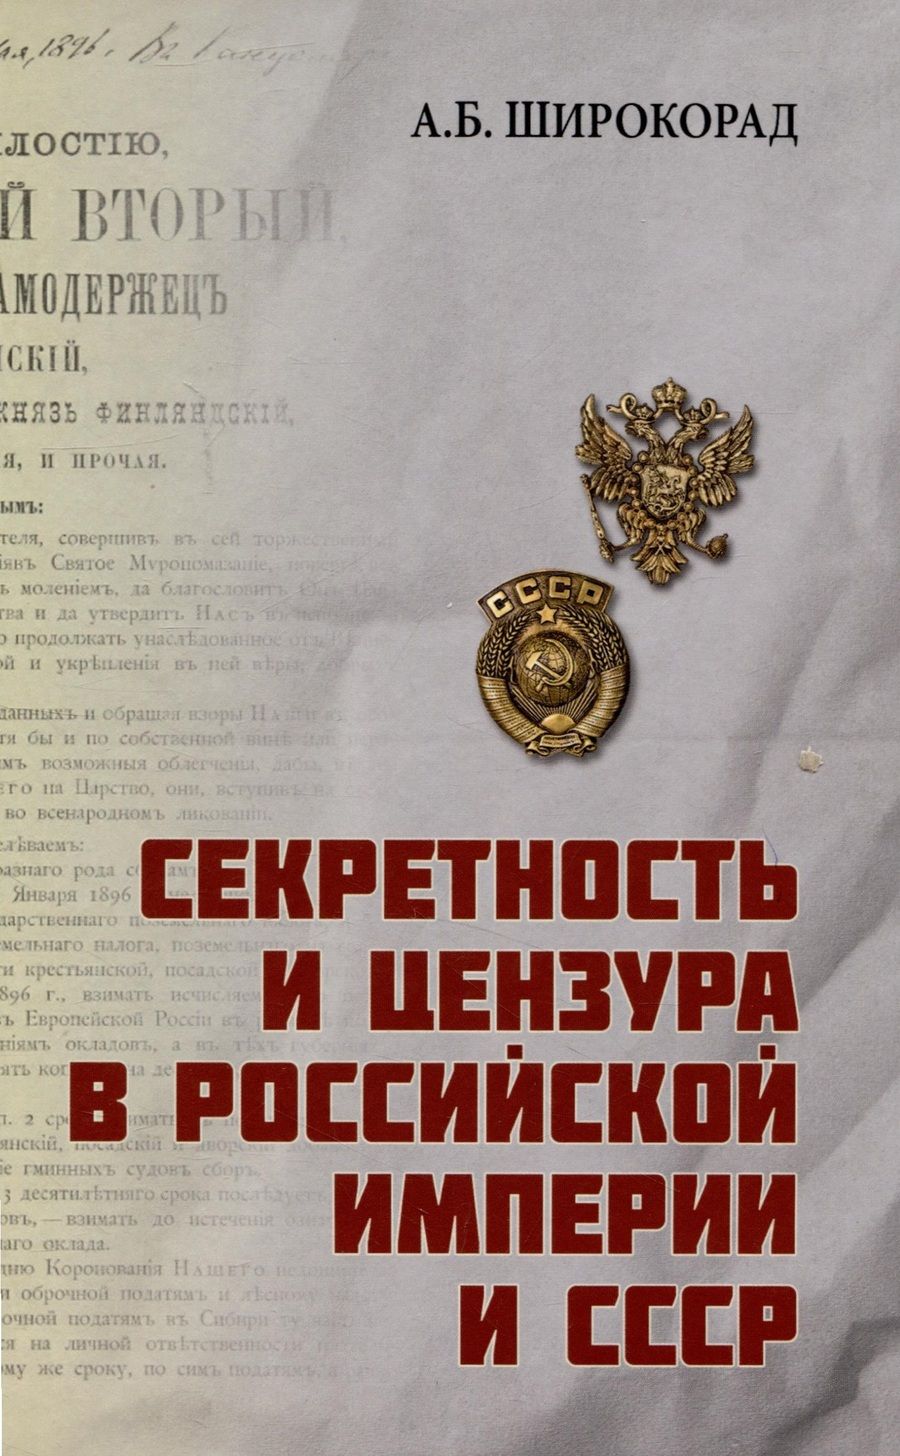 Обложка книги "Широкорад: Секретность и цензура в Российской империи и СССР"